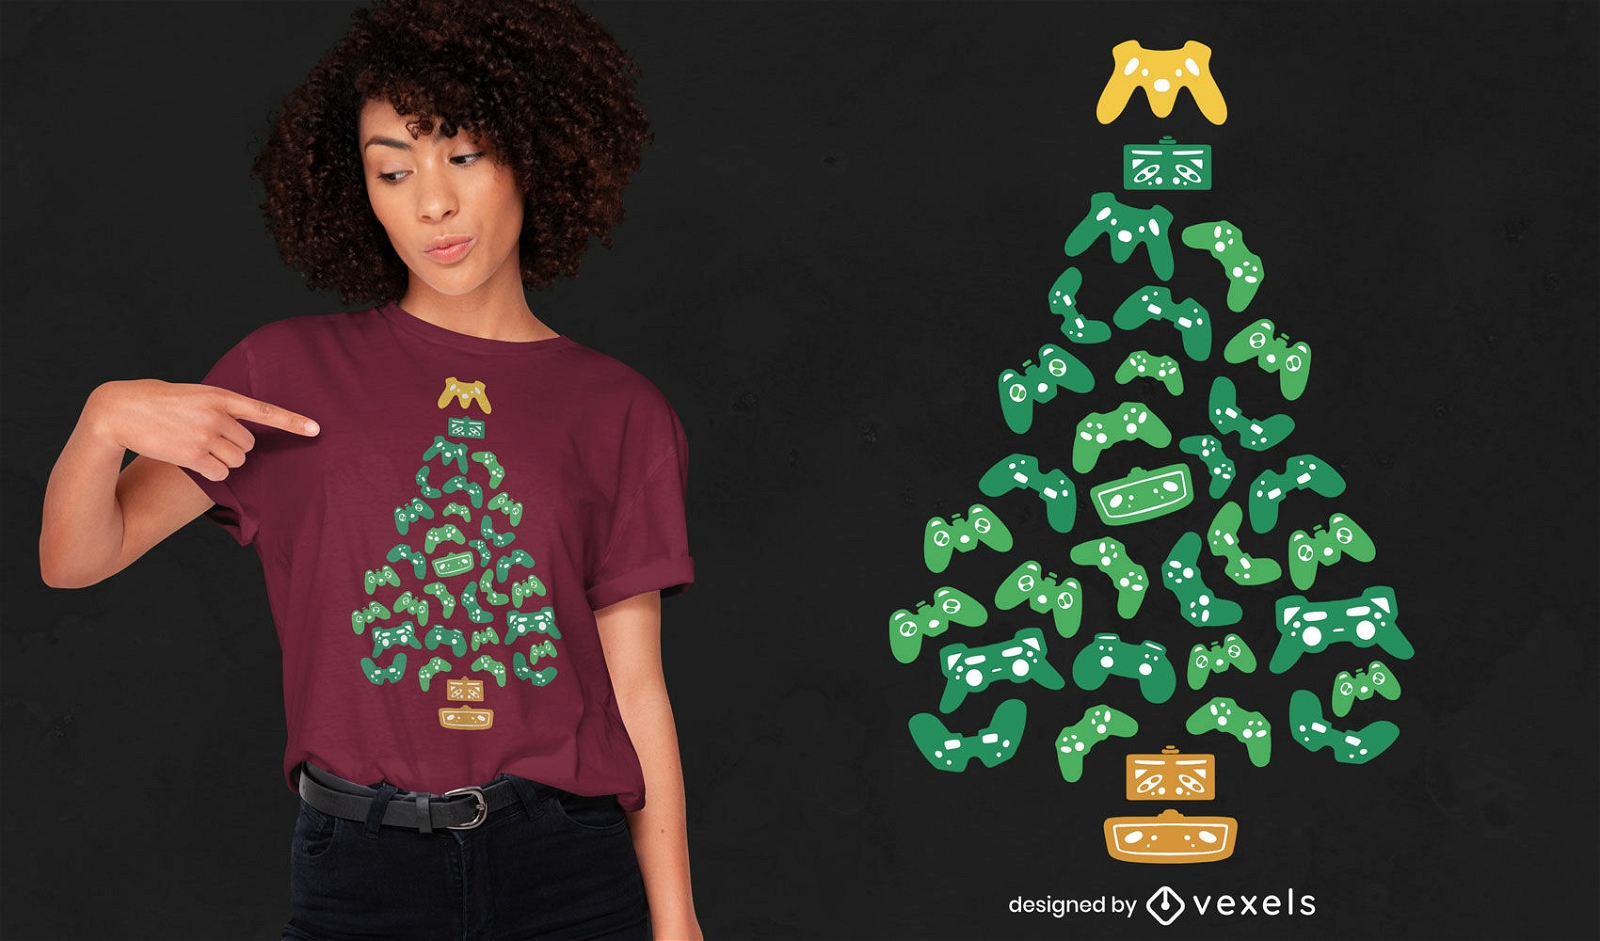 Diseño de camiseta de árbol de navidad joystics.